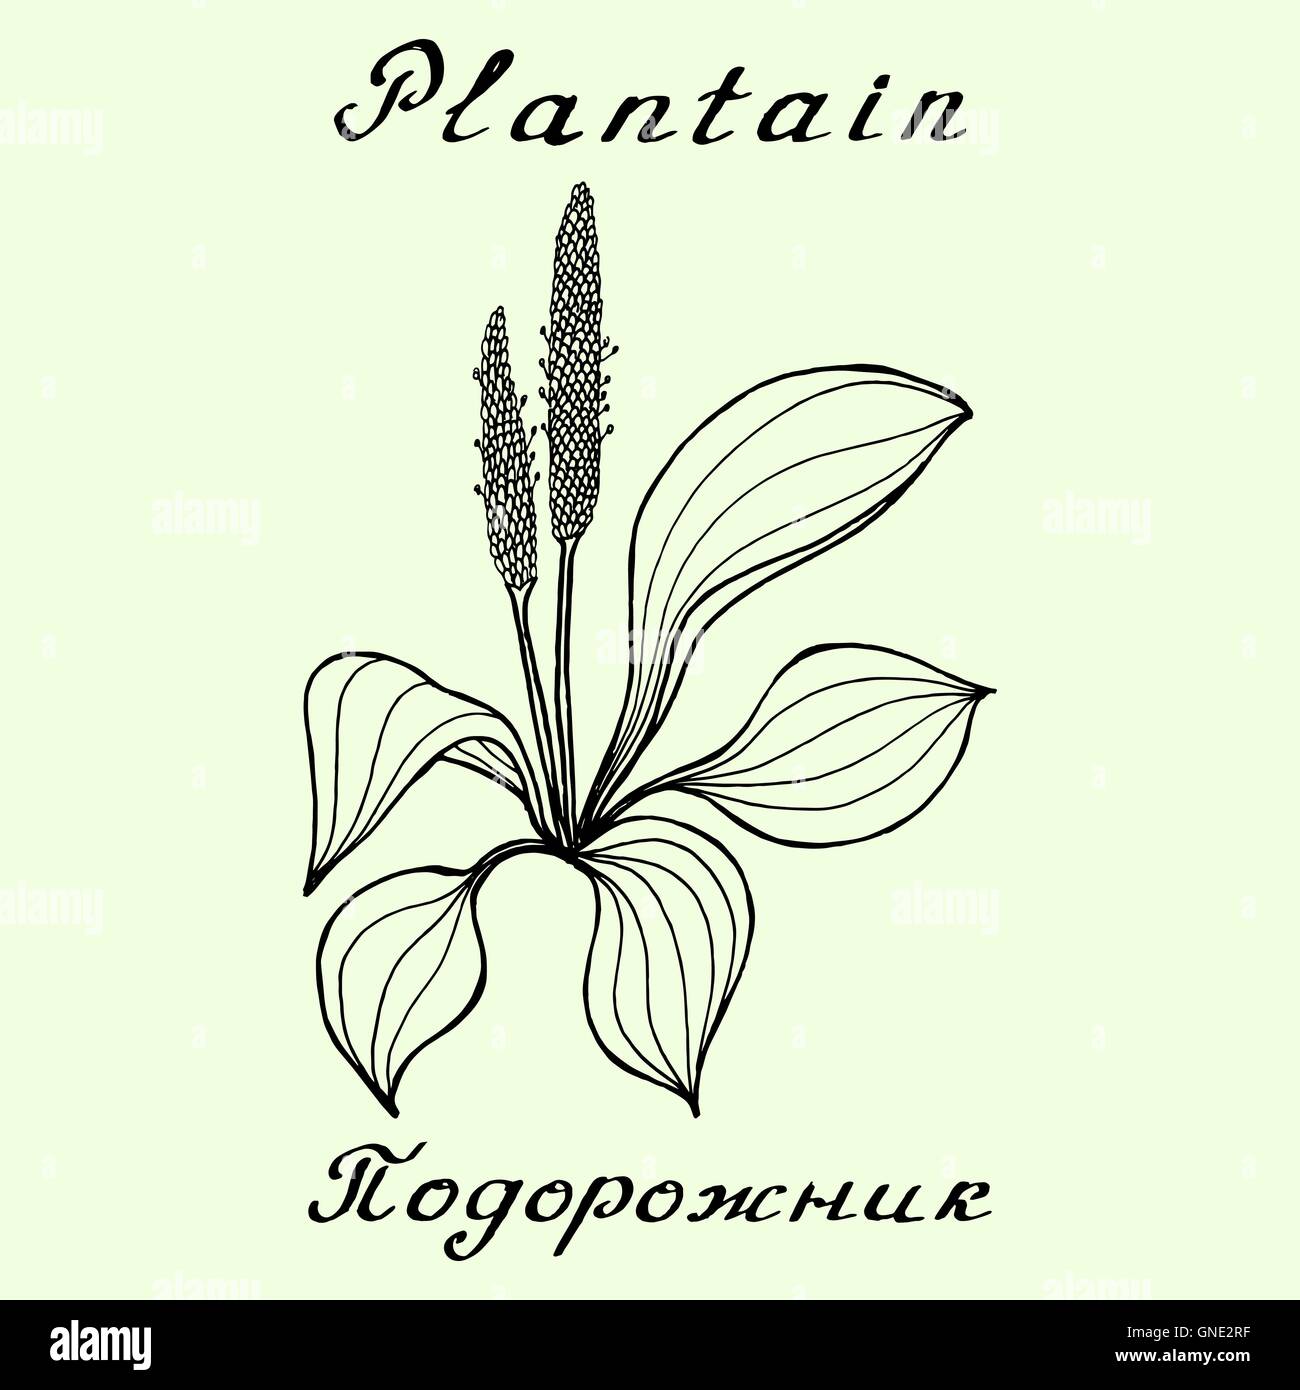 Le plantain. Dessin à l'encre et le lettrage Illustration de Vecteur